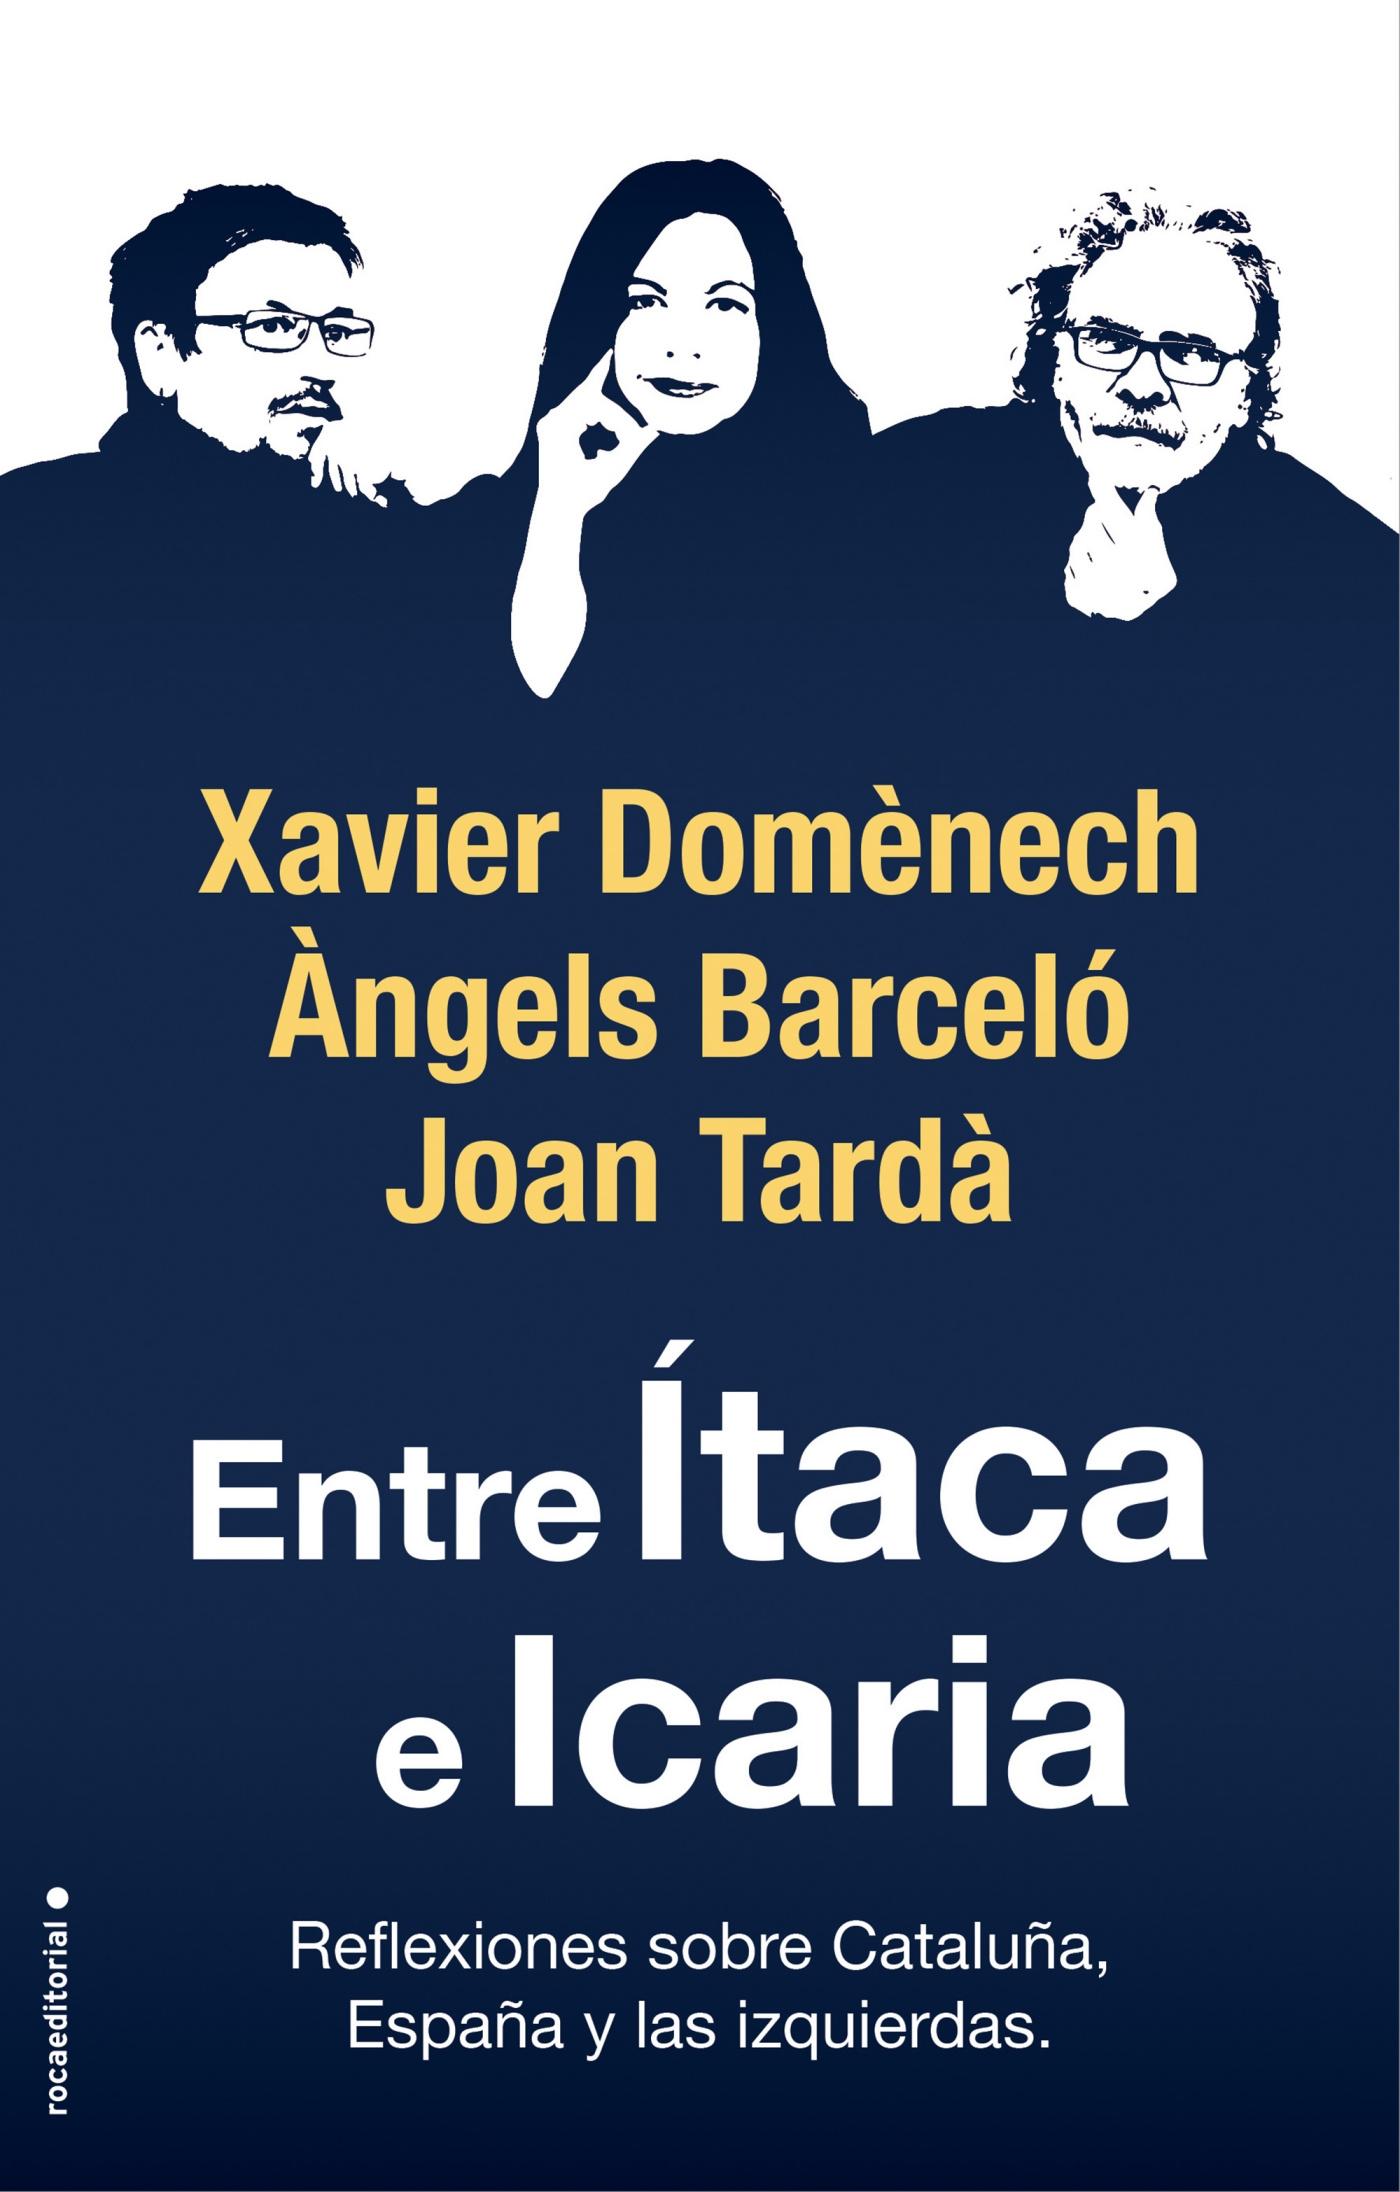 Entre Ítaca e Icaria "Reflexiones sobre Cataluña, España y las Izquierdas". 